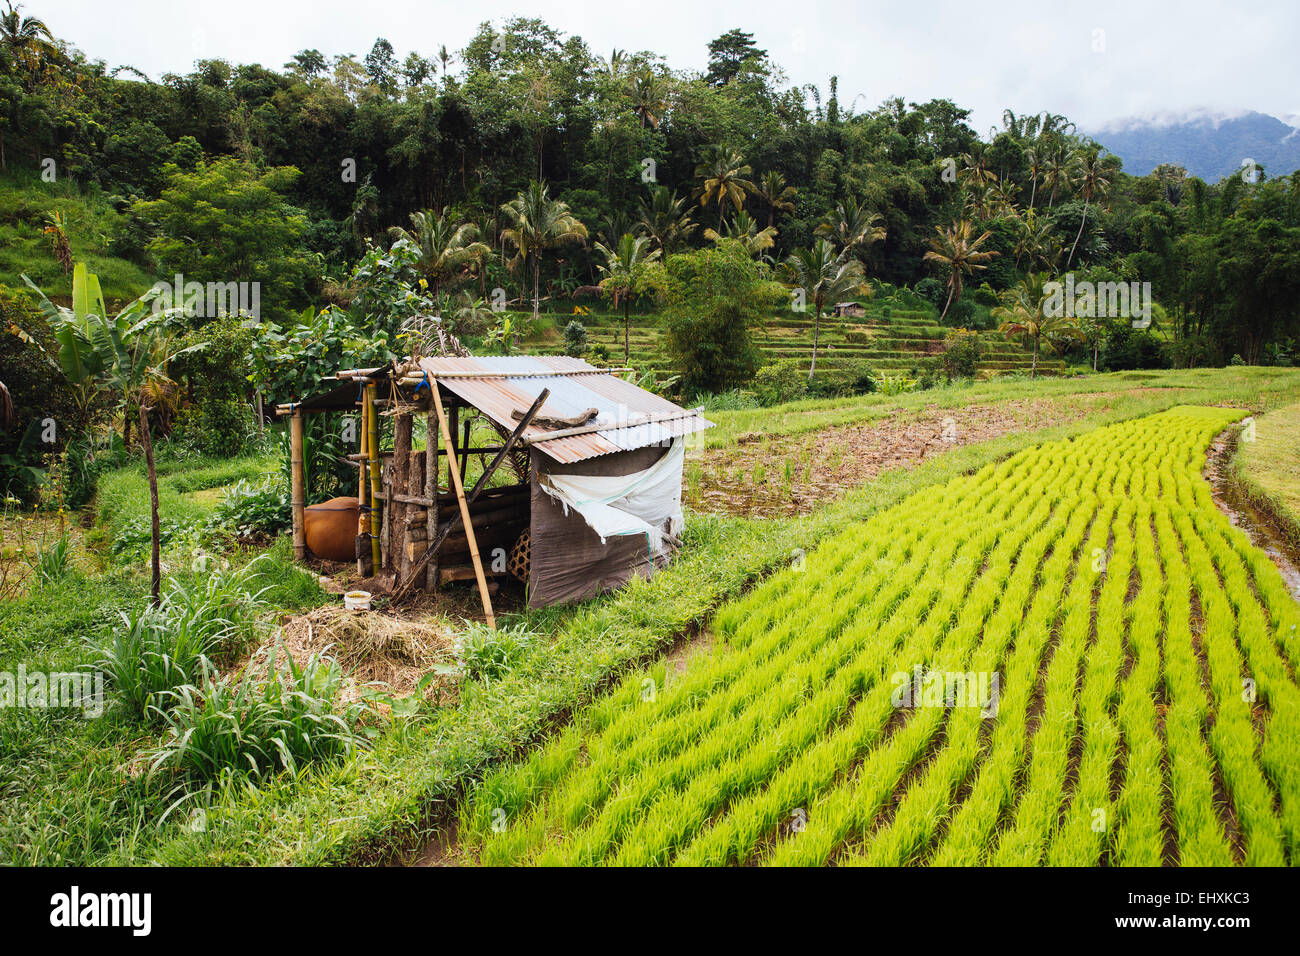 Indonesien, Bali, grüner Reis Sämlinge im Reisfeld Stockfoto